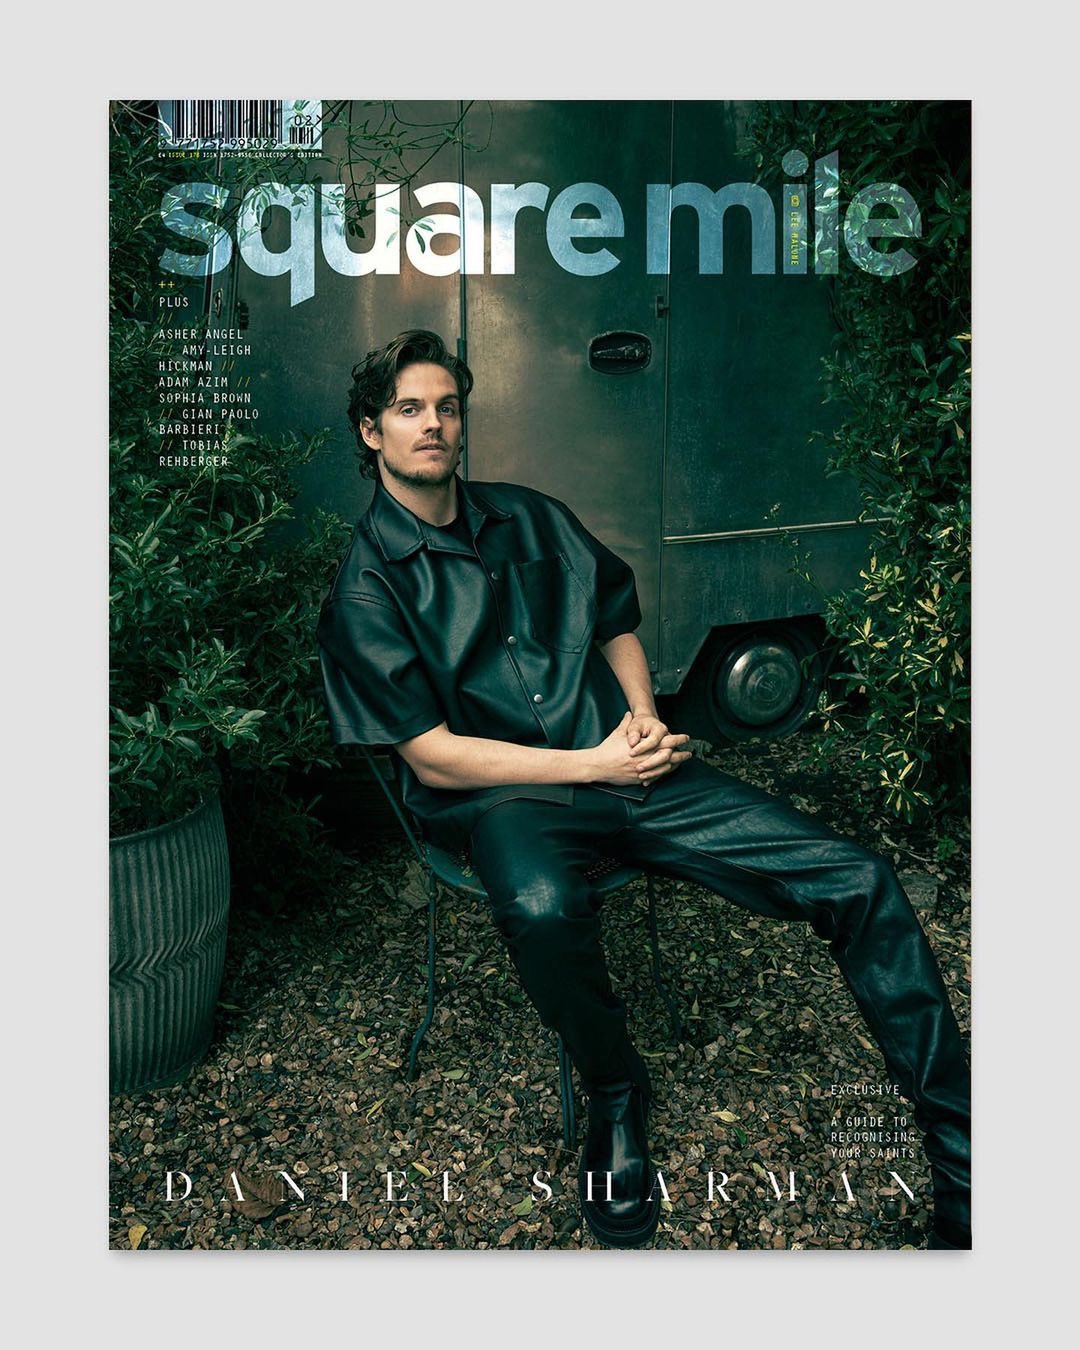 SQUARE MILE Magazine 2023 Daniel Sharman Cover #2